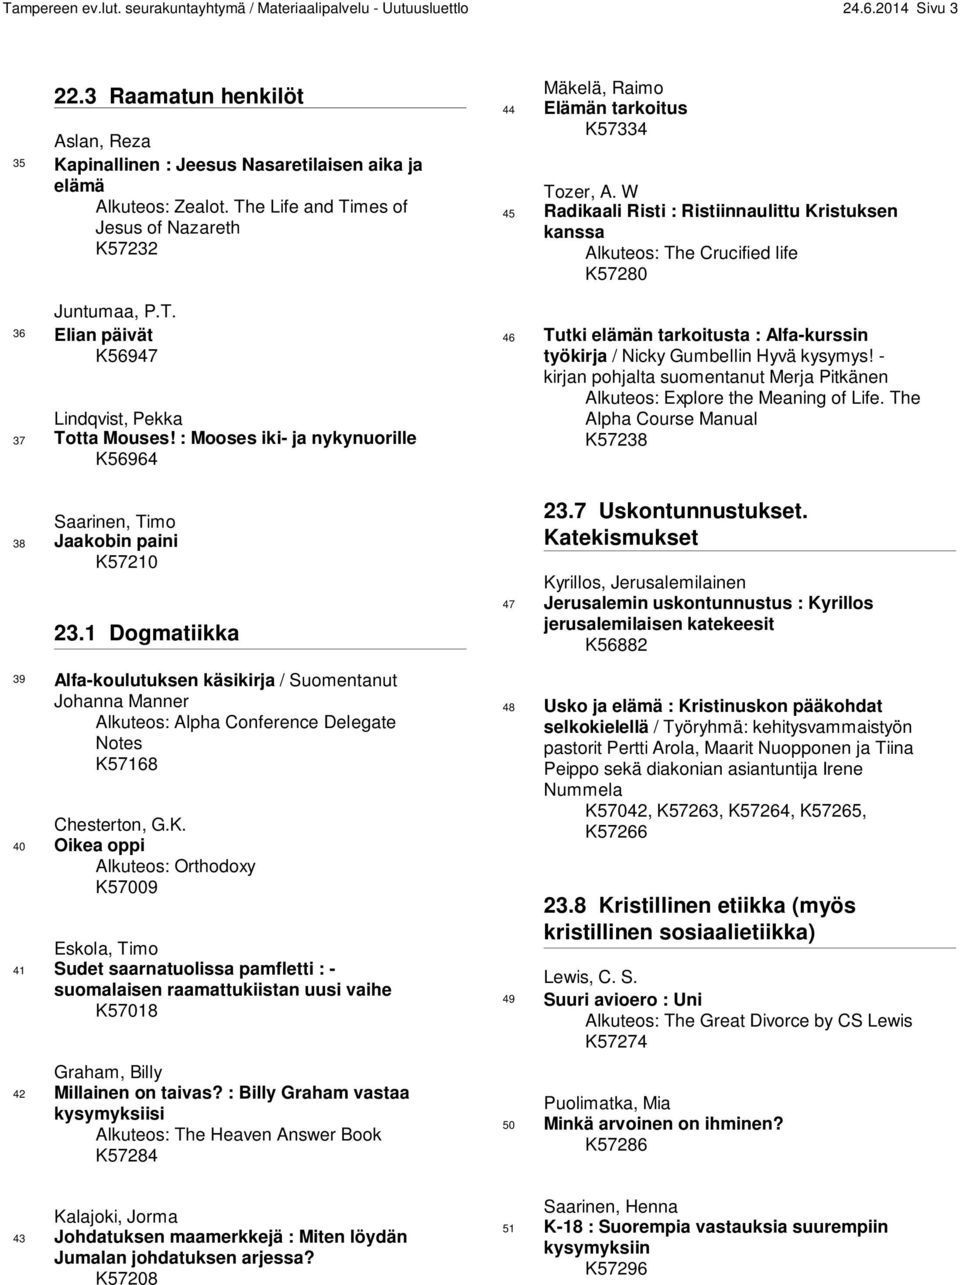 1 Dogmatiikka 39 Alfa-koulutuksen käsikirja / Suomentanut Johanna Manner Alkuteos: Alpha Conference Delegate Notes K5